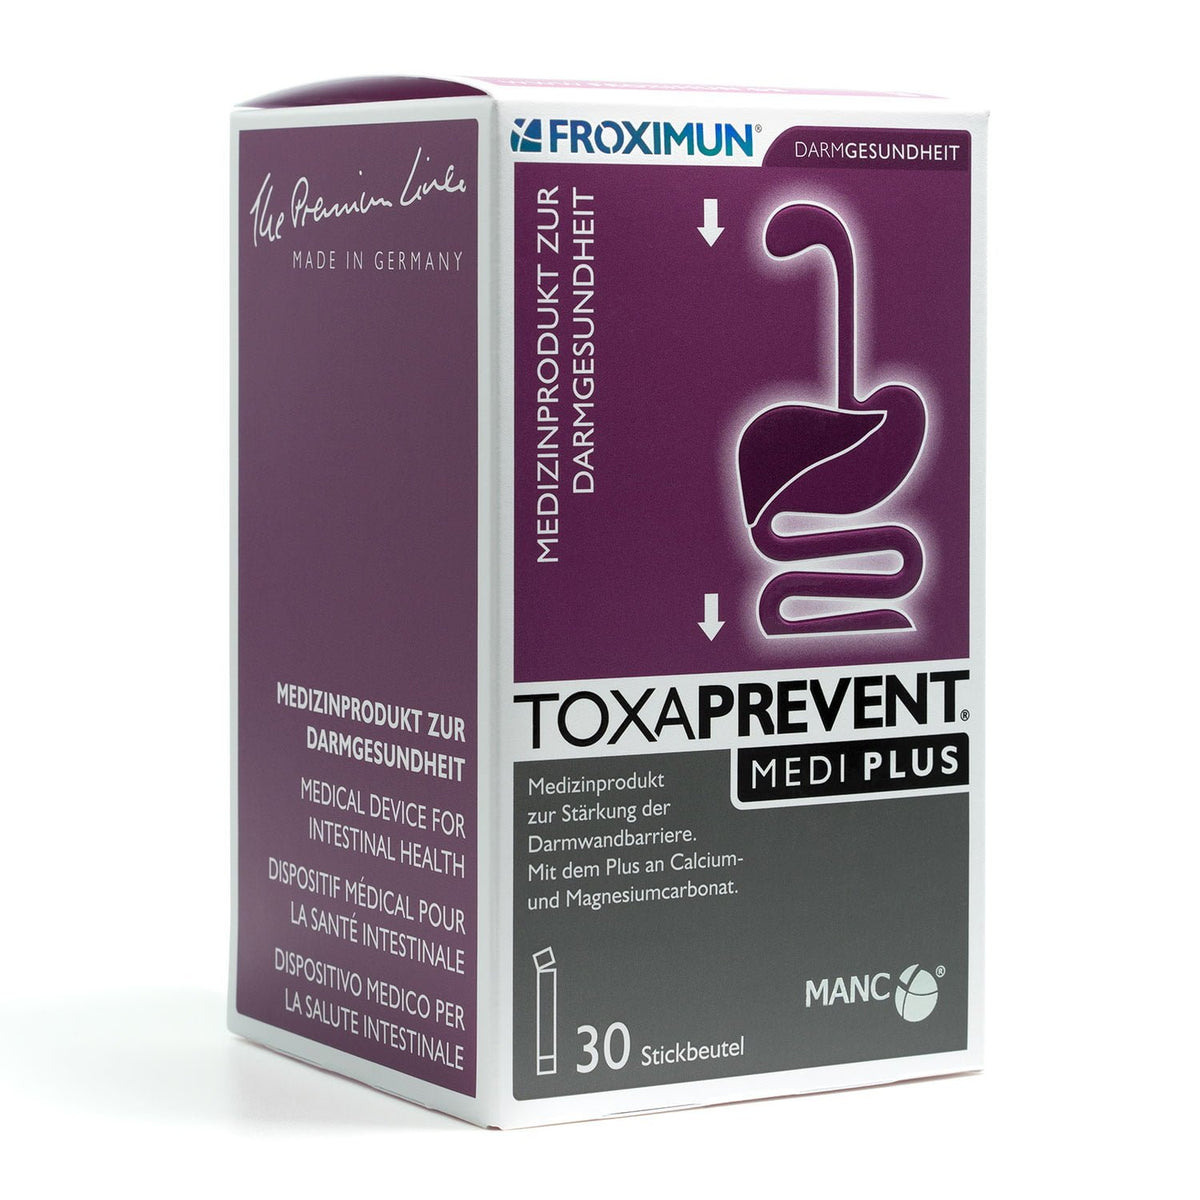 Toxaprevent Medi Plus 30x 3g